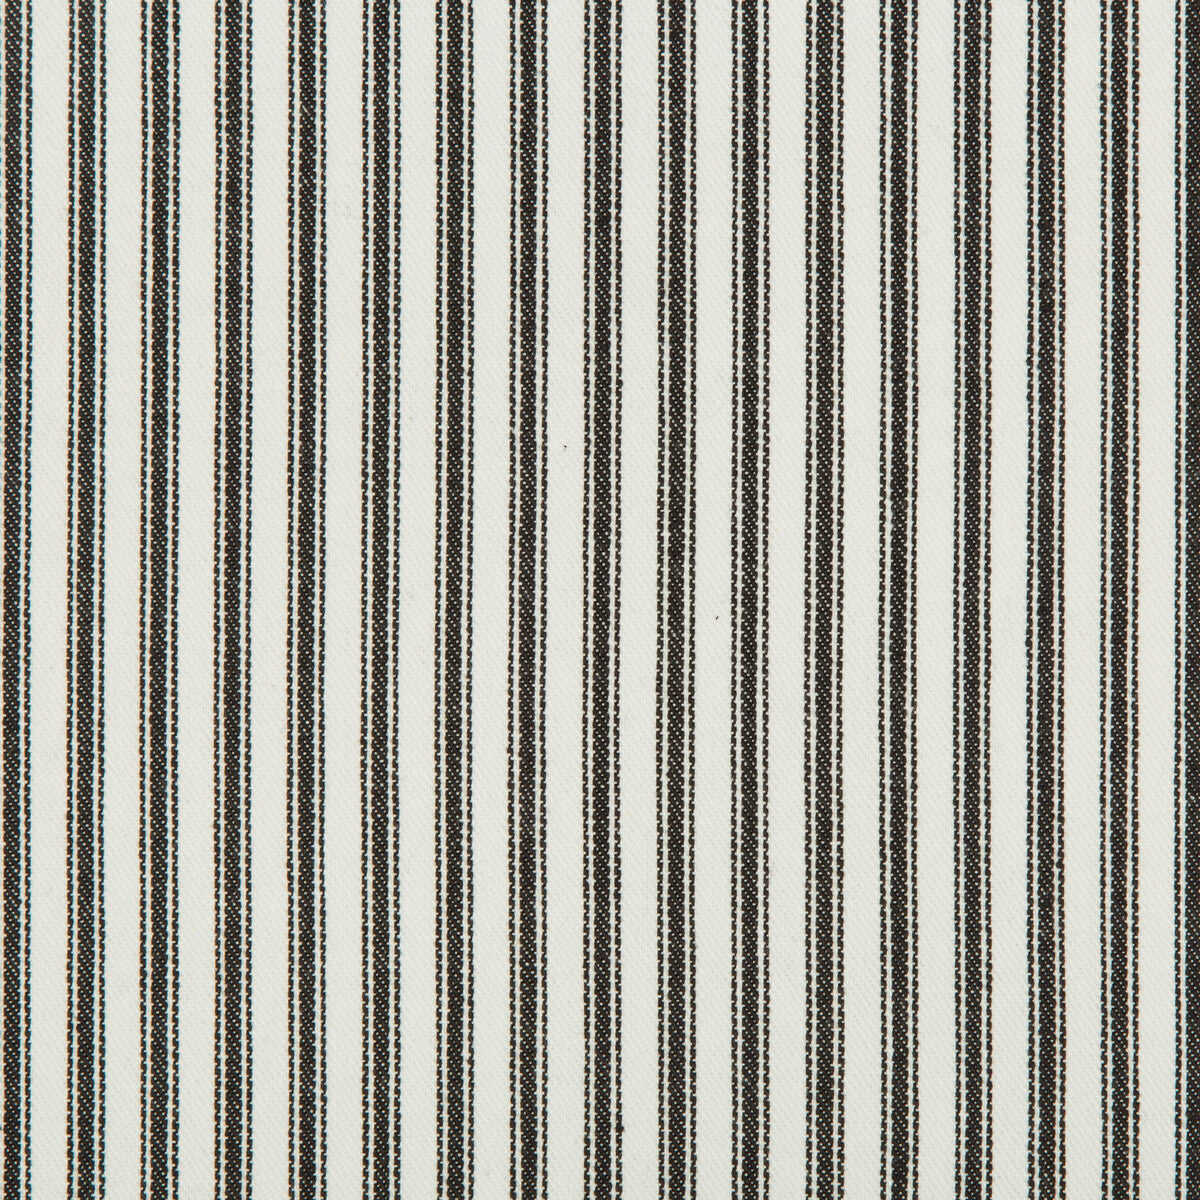 Kravet Basics fabric in 31571-8 color - pattern 31571.8.0 - by Kravet Basics